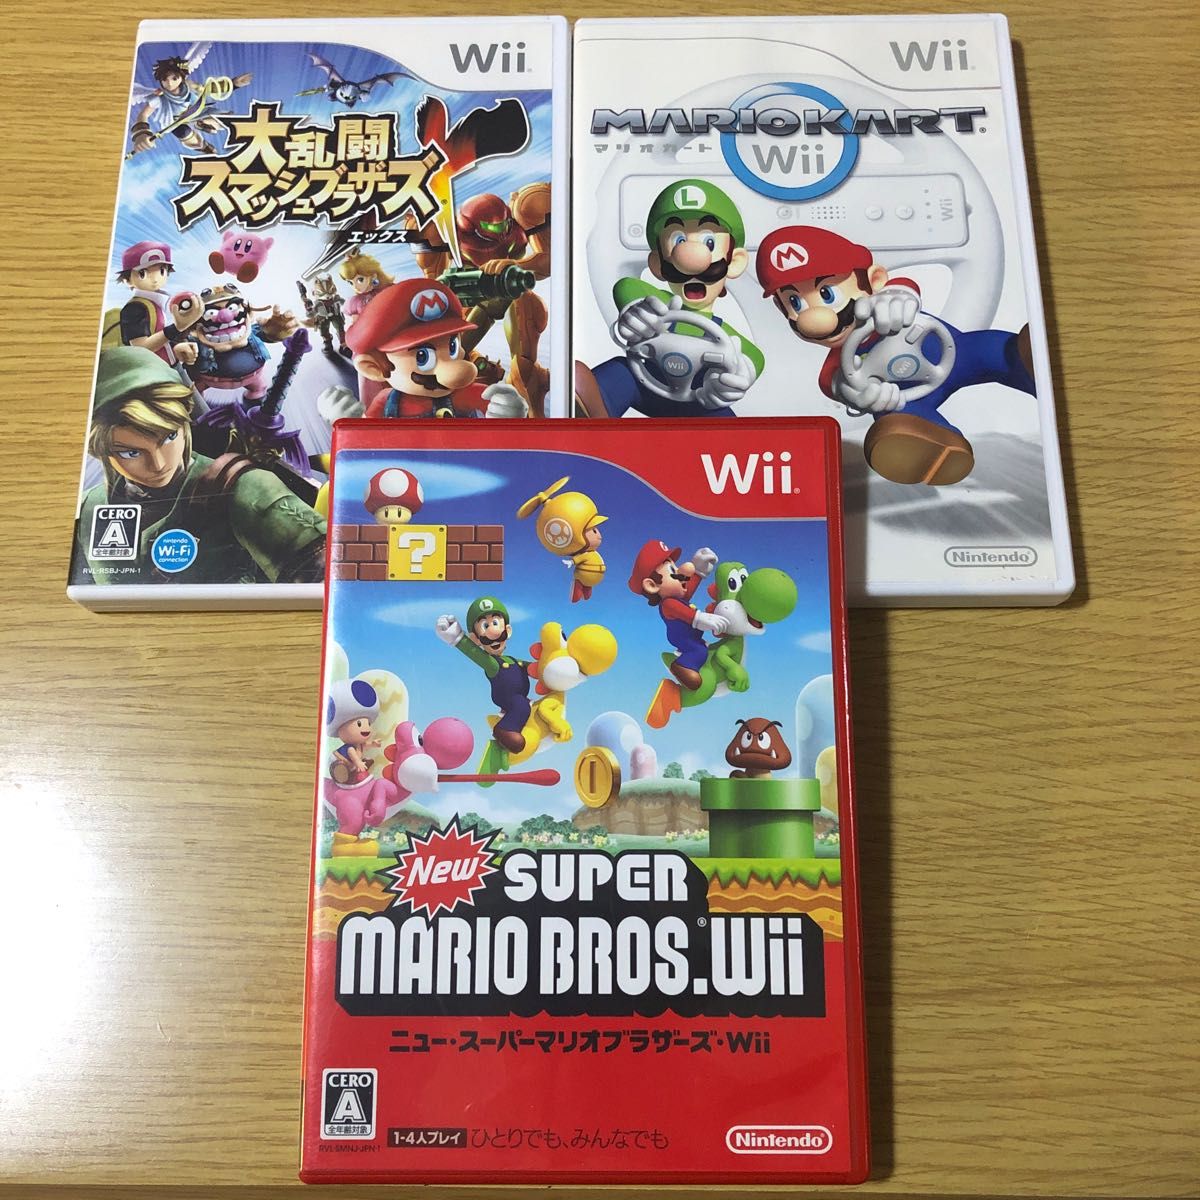 大乱闘スマッシュブラザーズX Wii、マリオカートWii、Newスーパーマリオブラザーズ Wii